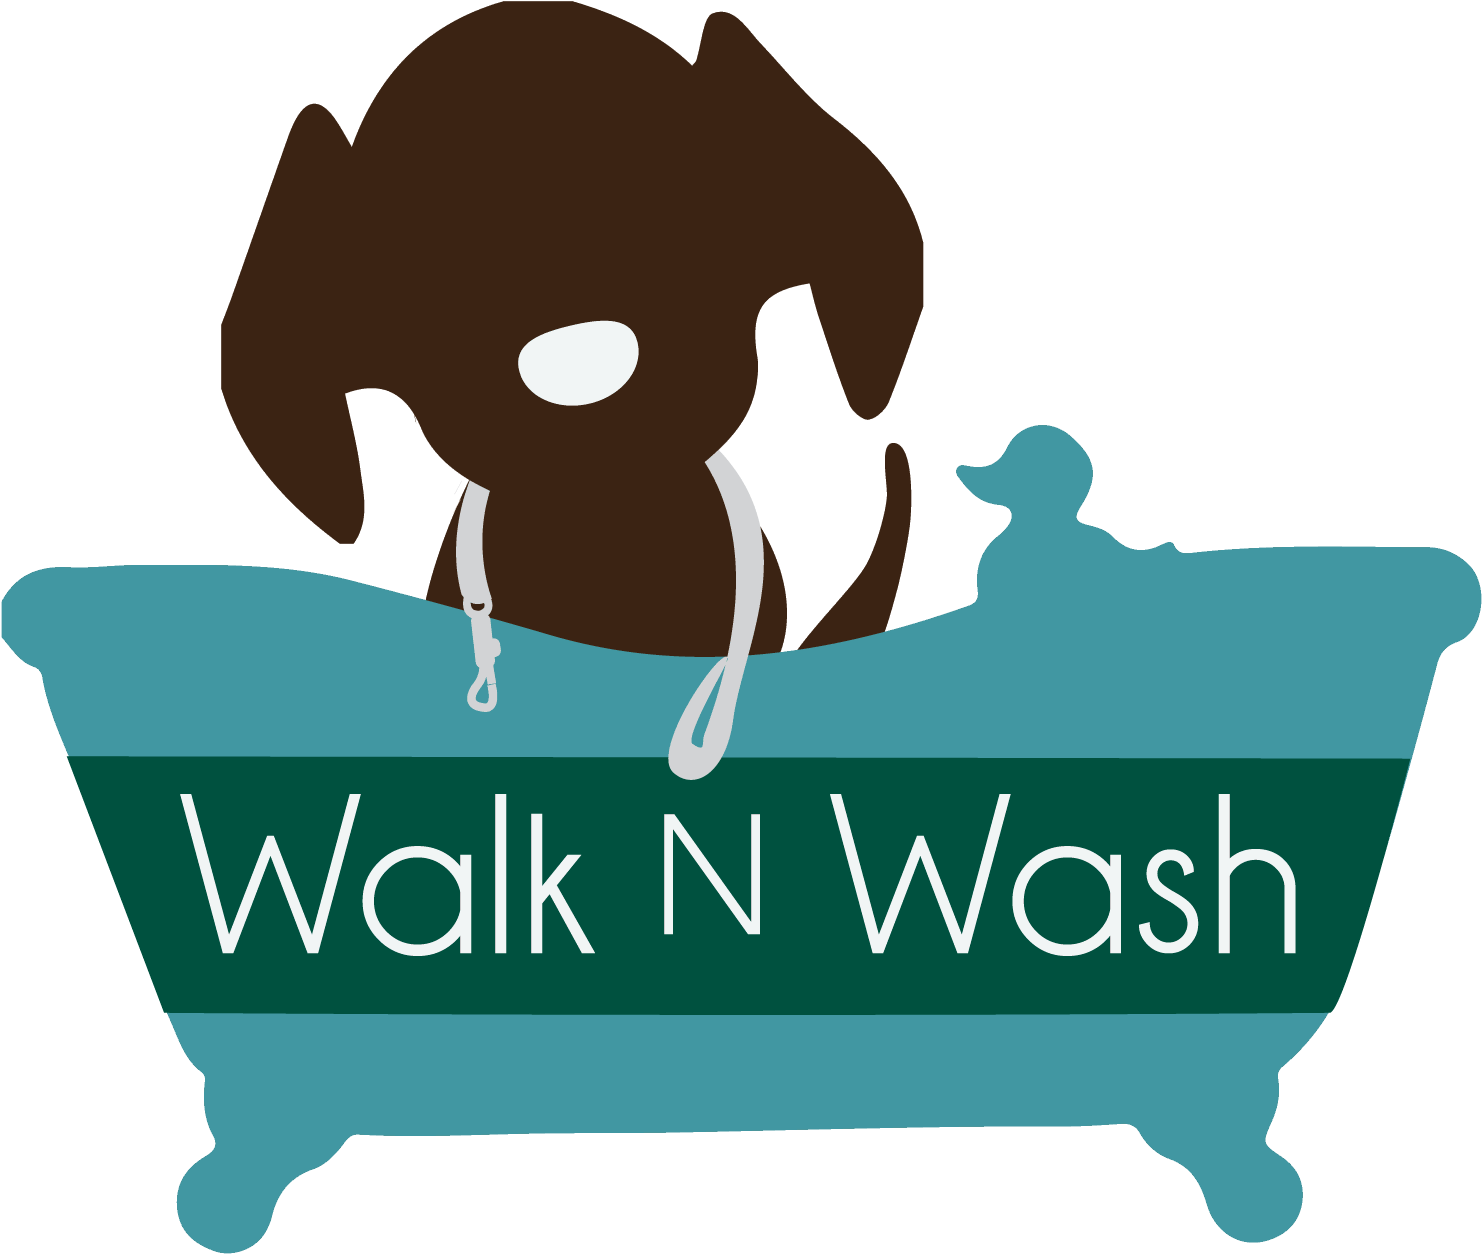 Walk N Wash Dog Grooming - Dog Walking And Washing (1675x1394)